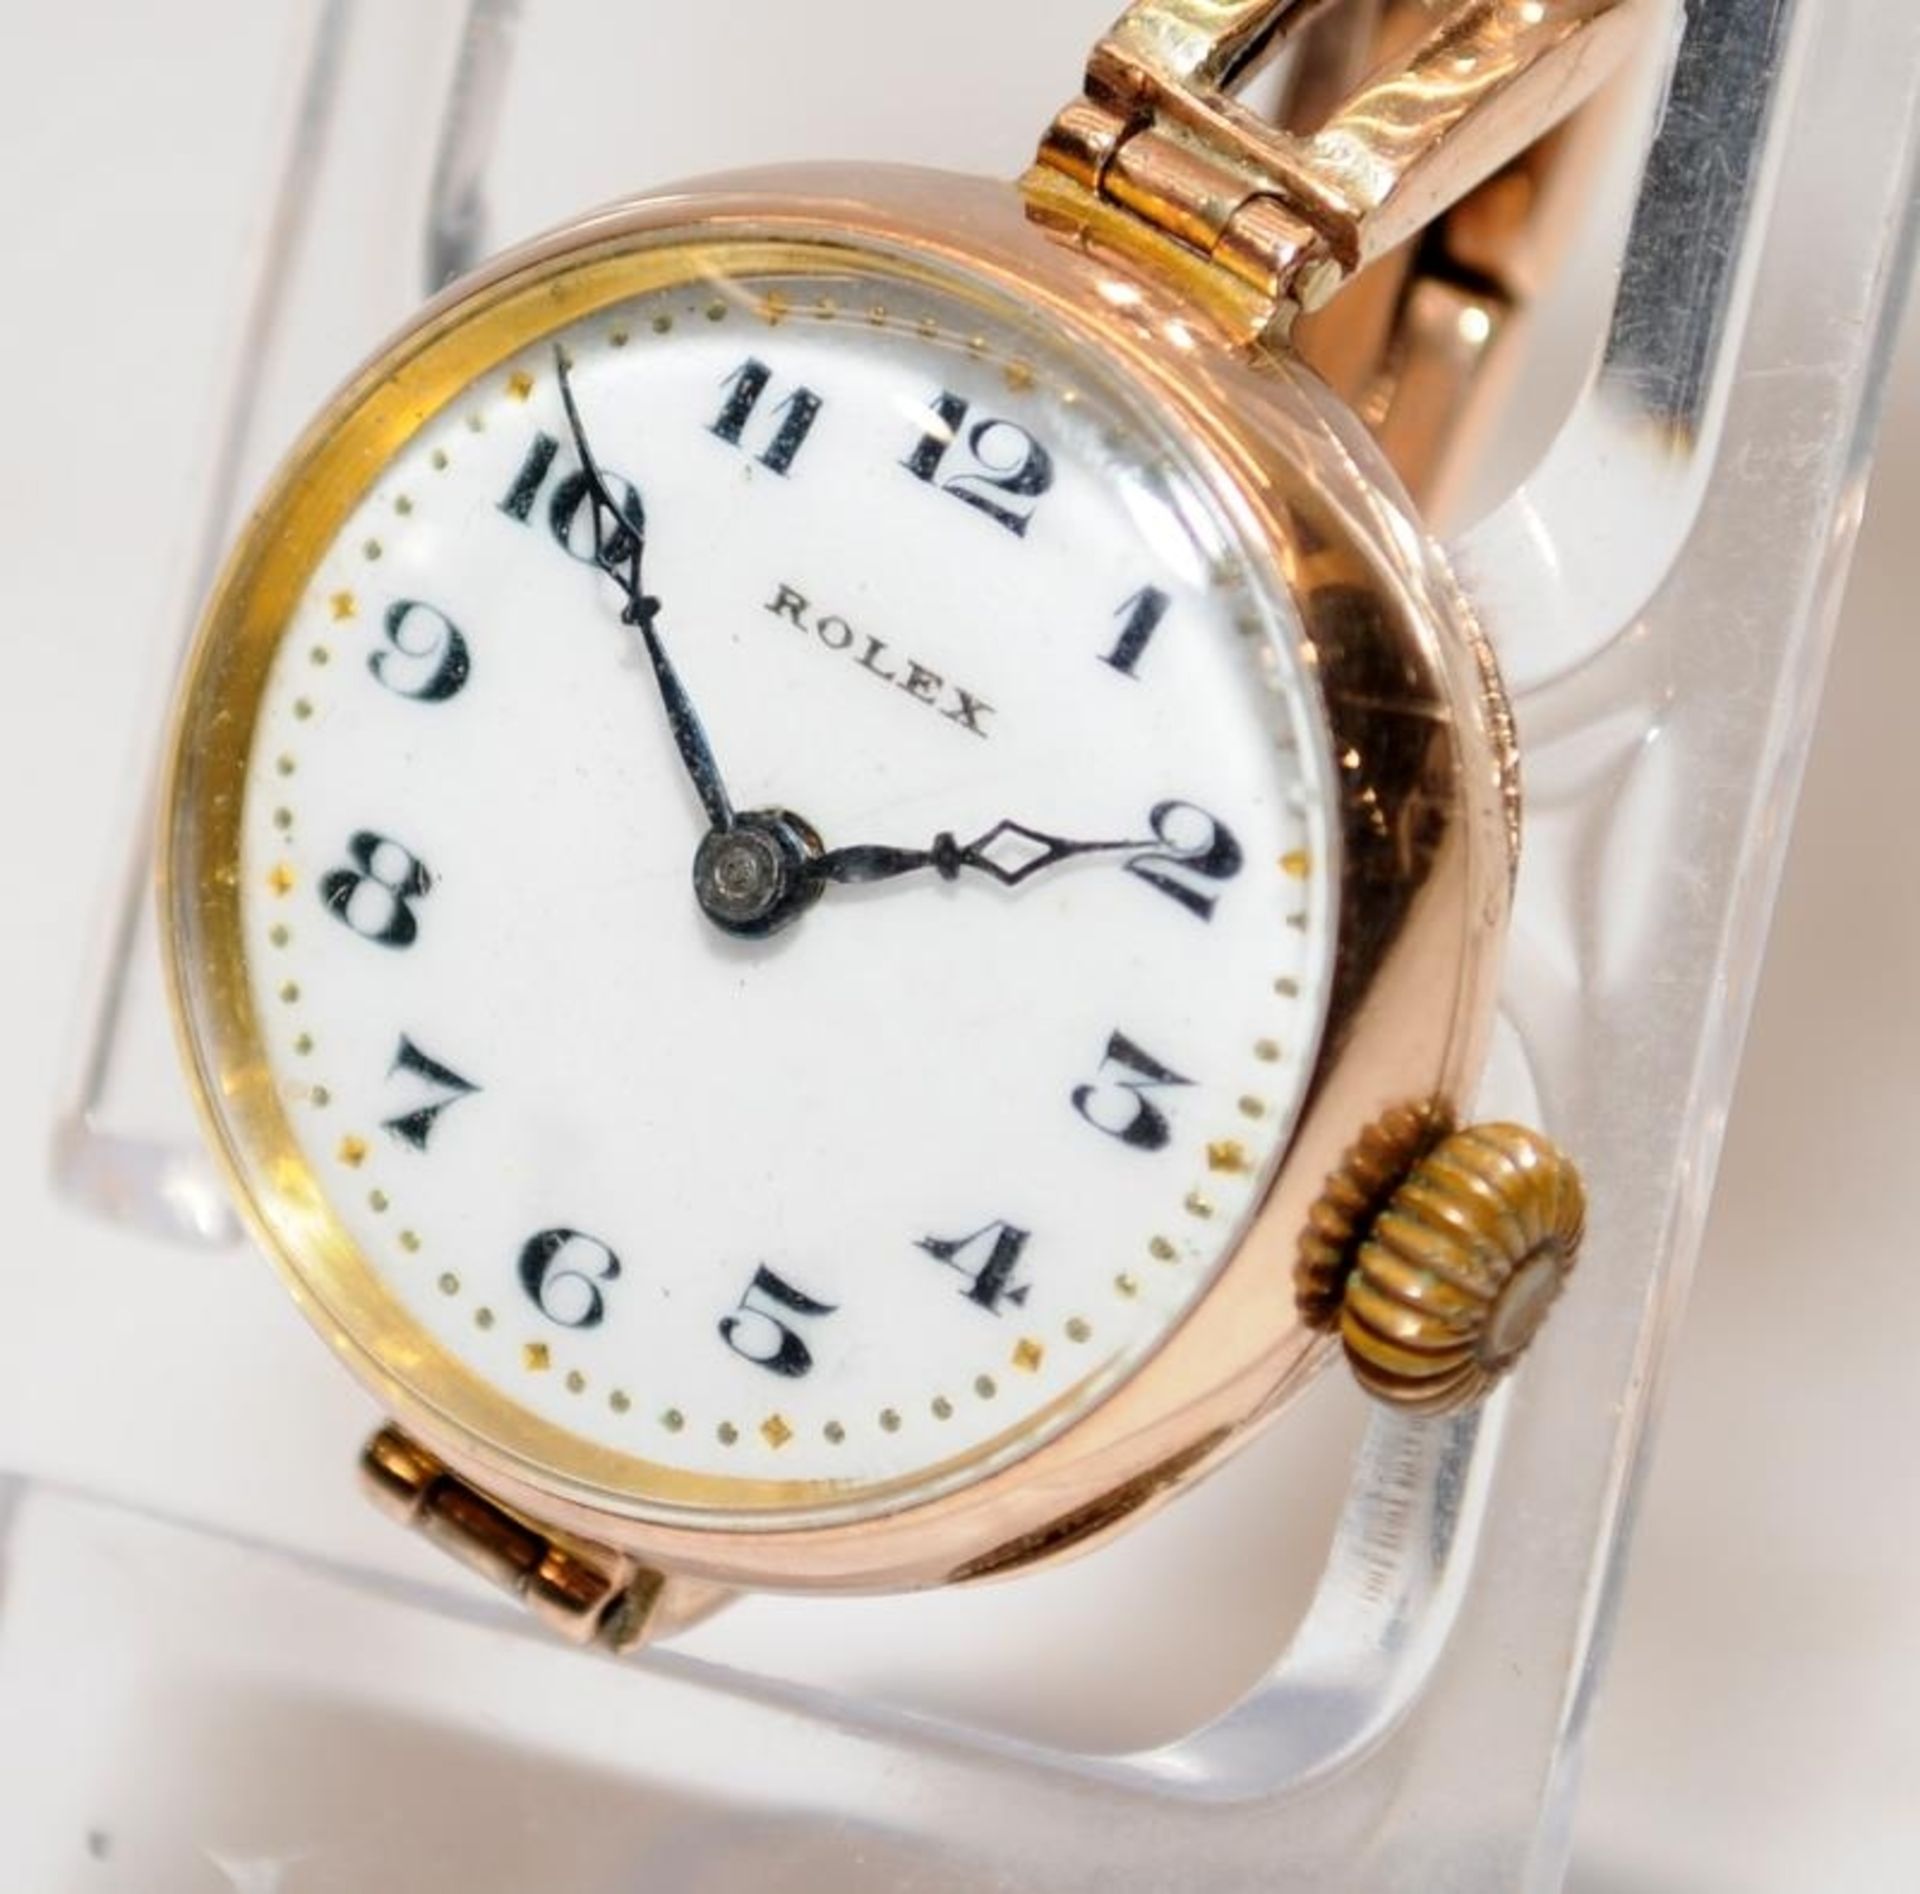 Vintage Rolex ladies 9ct gold working wristwatch.